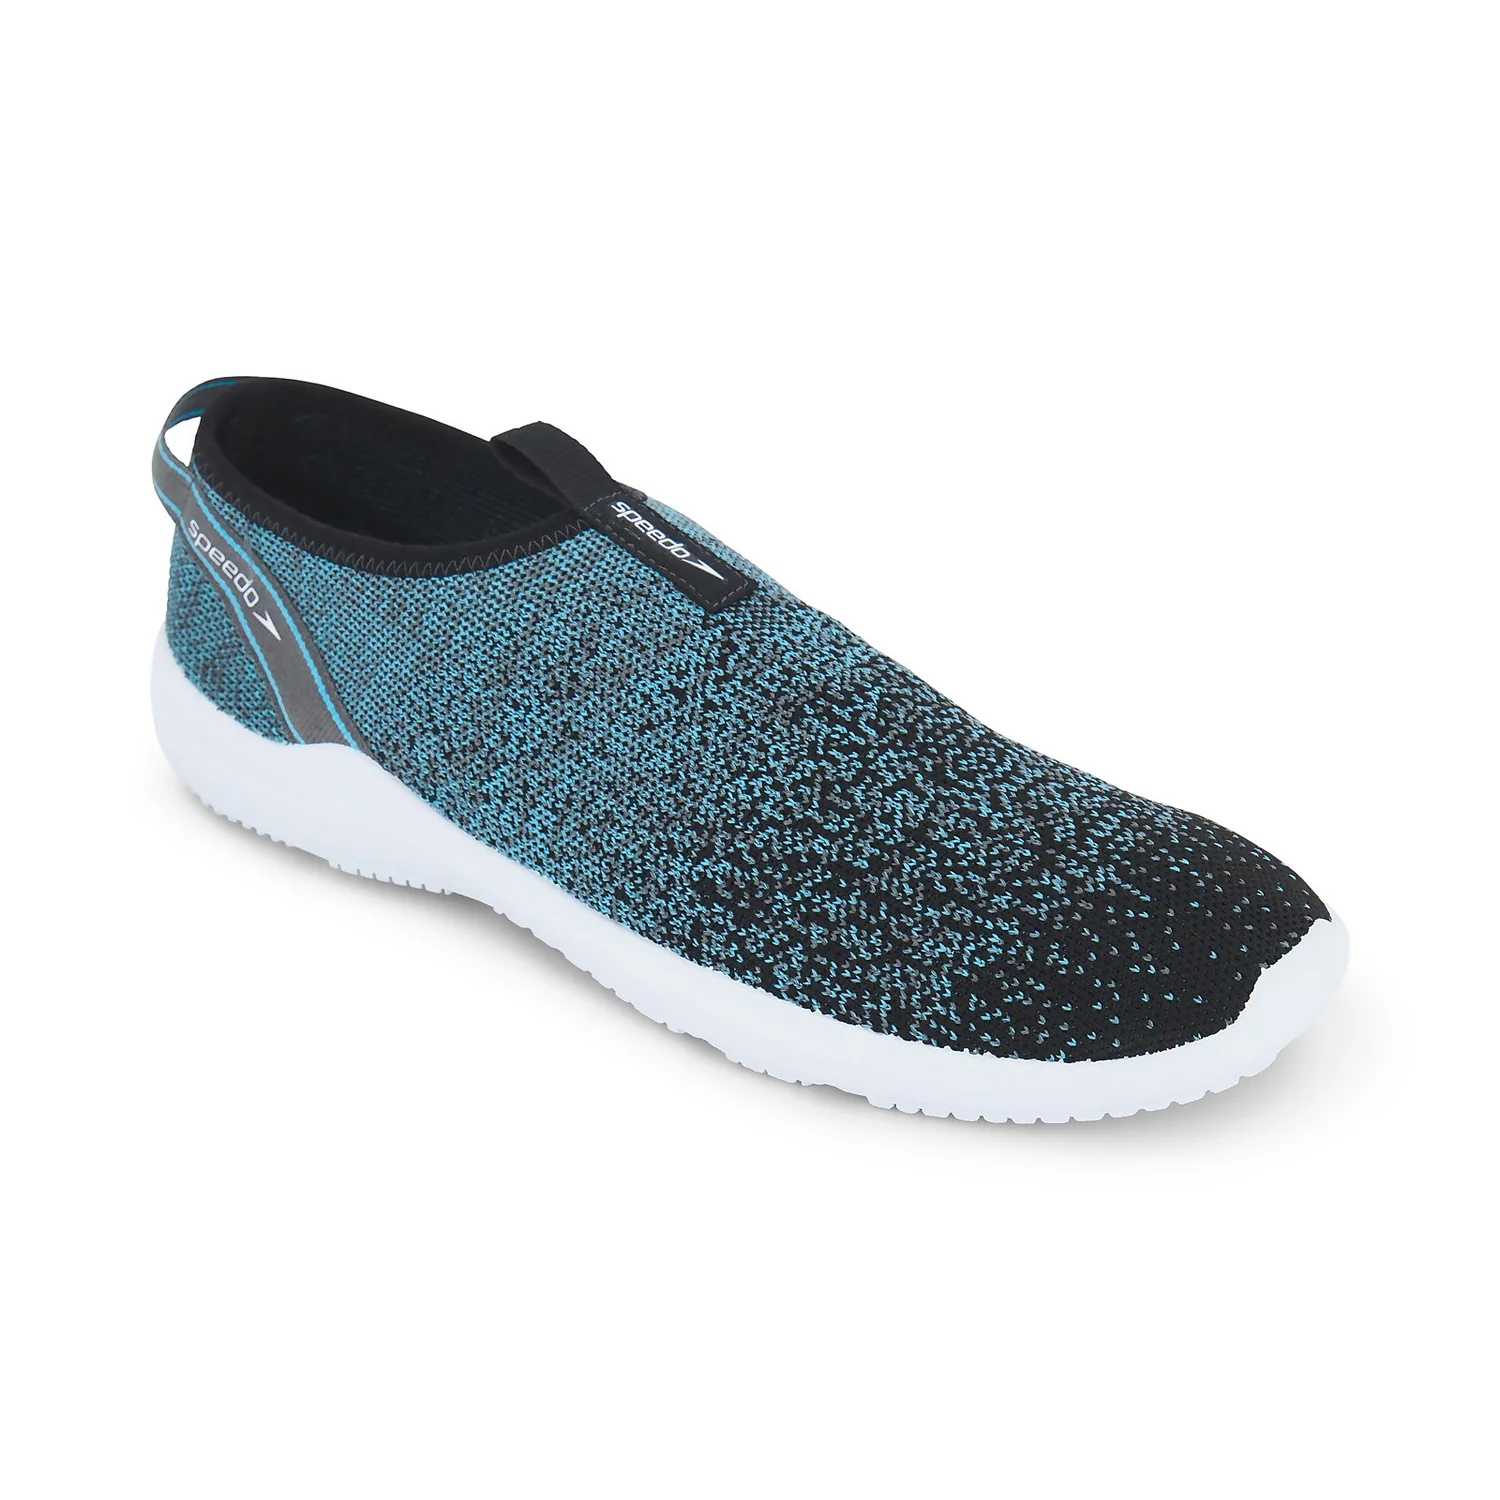 Speedo Surf Knit Pro Water Shoe